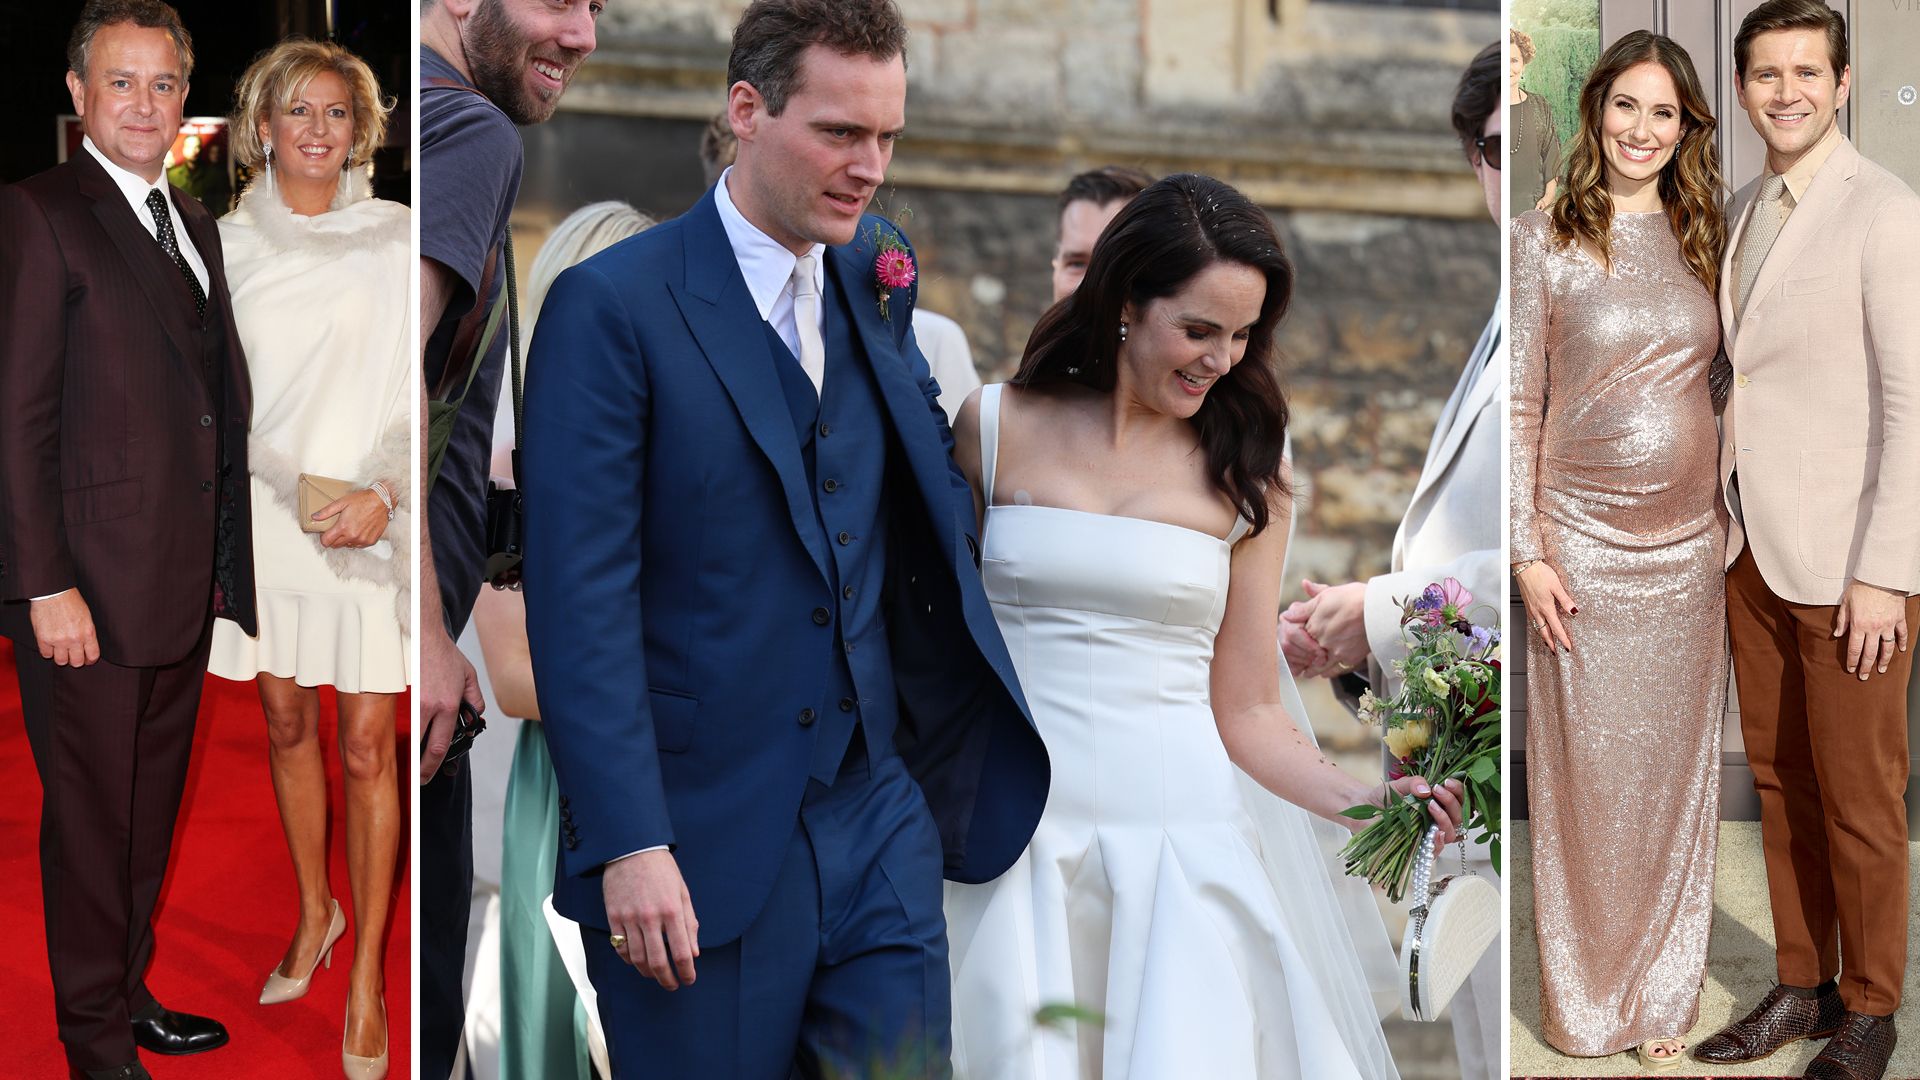 Downton Abbey stars' fairytale weddings: Michelle Dockery's art gallery ...